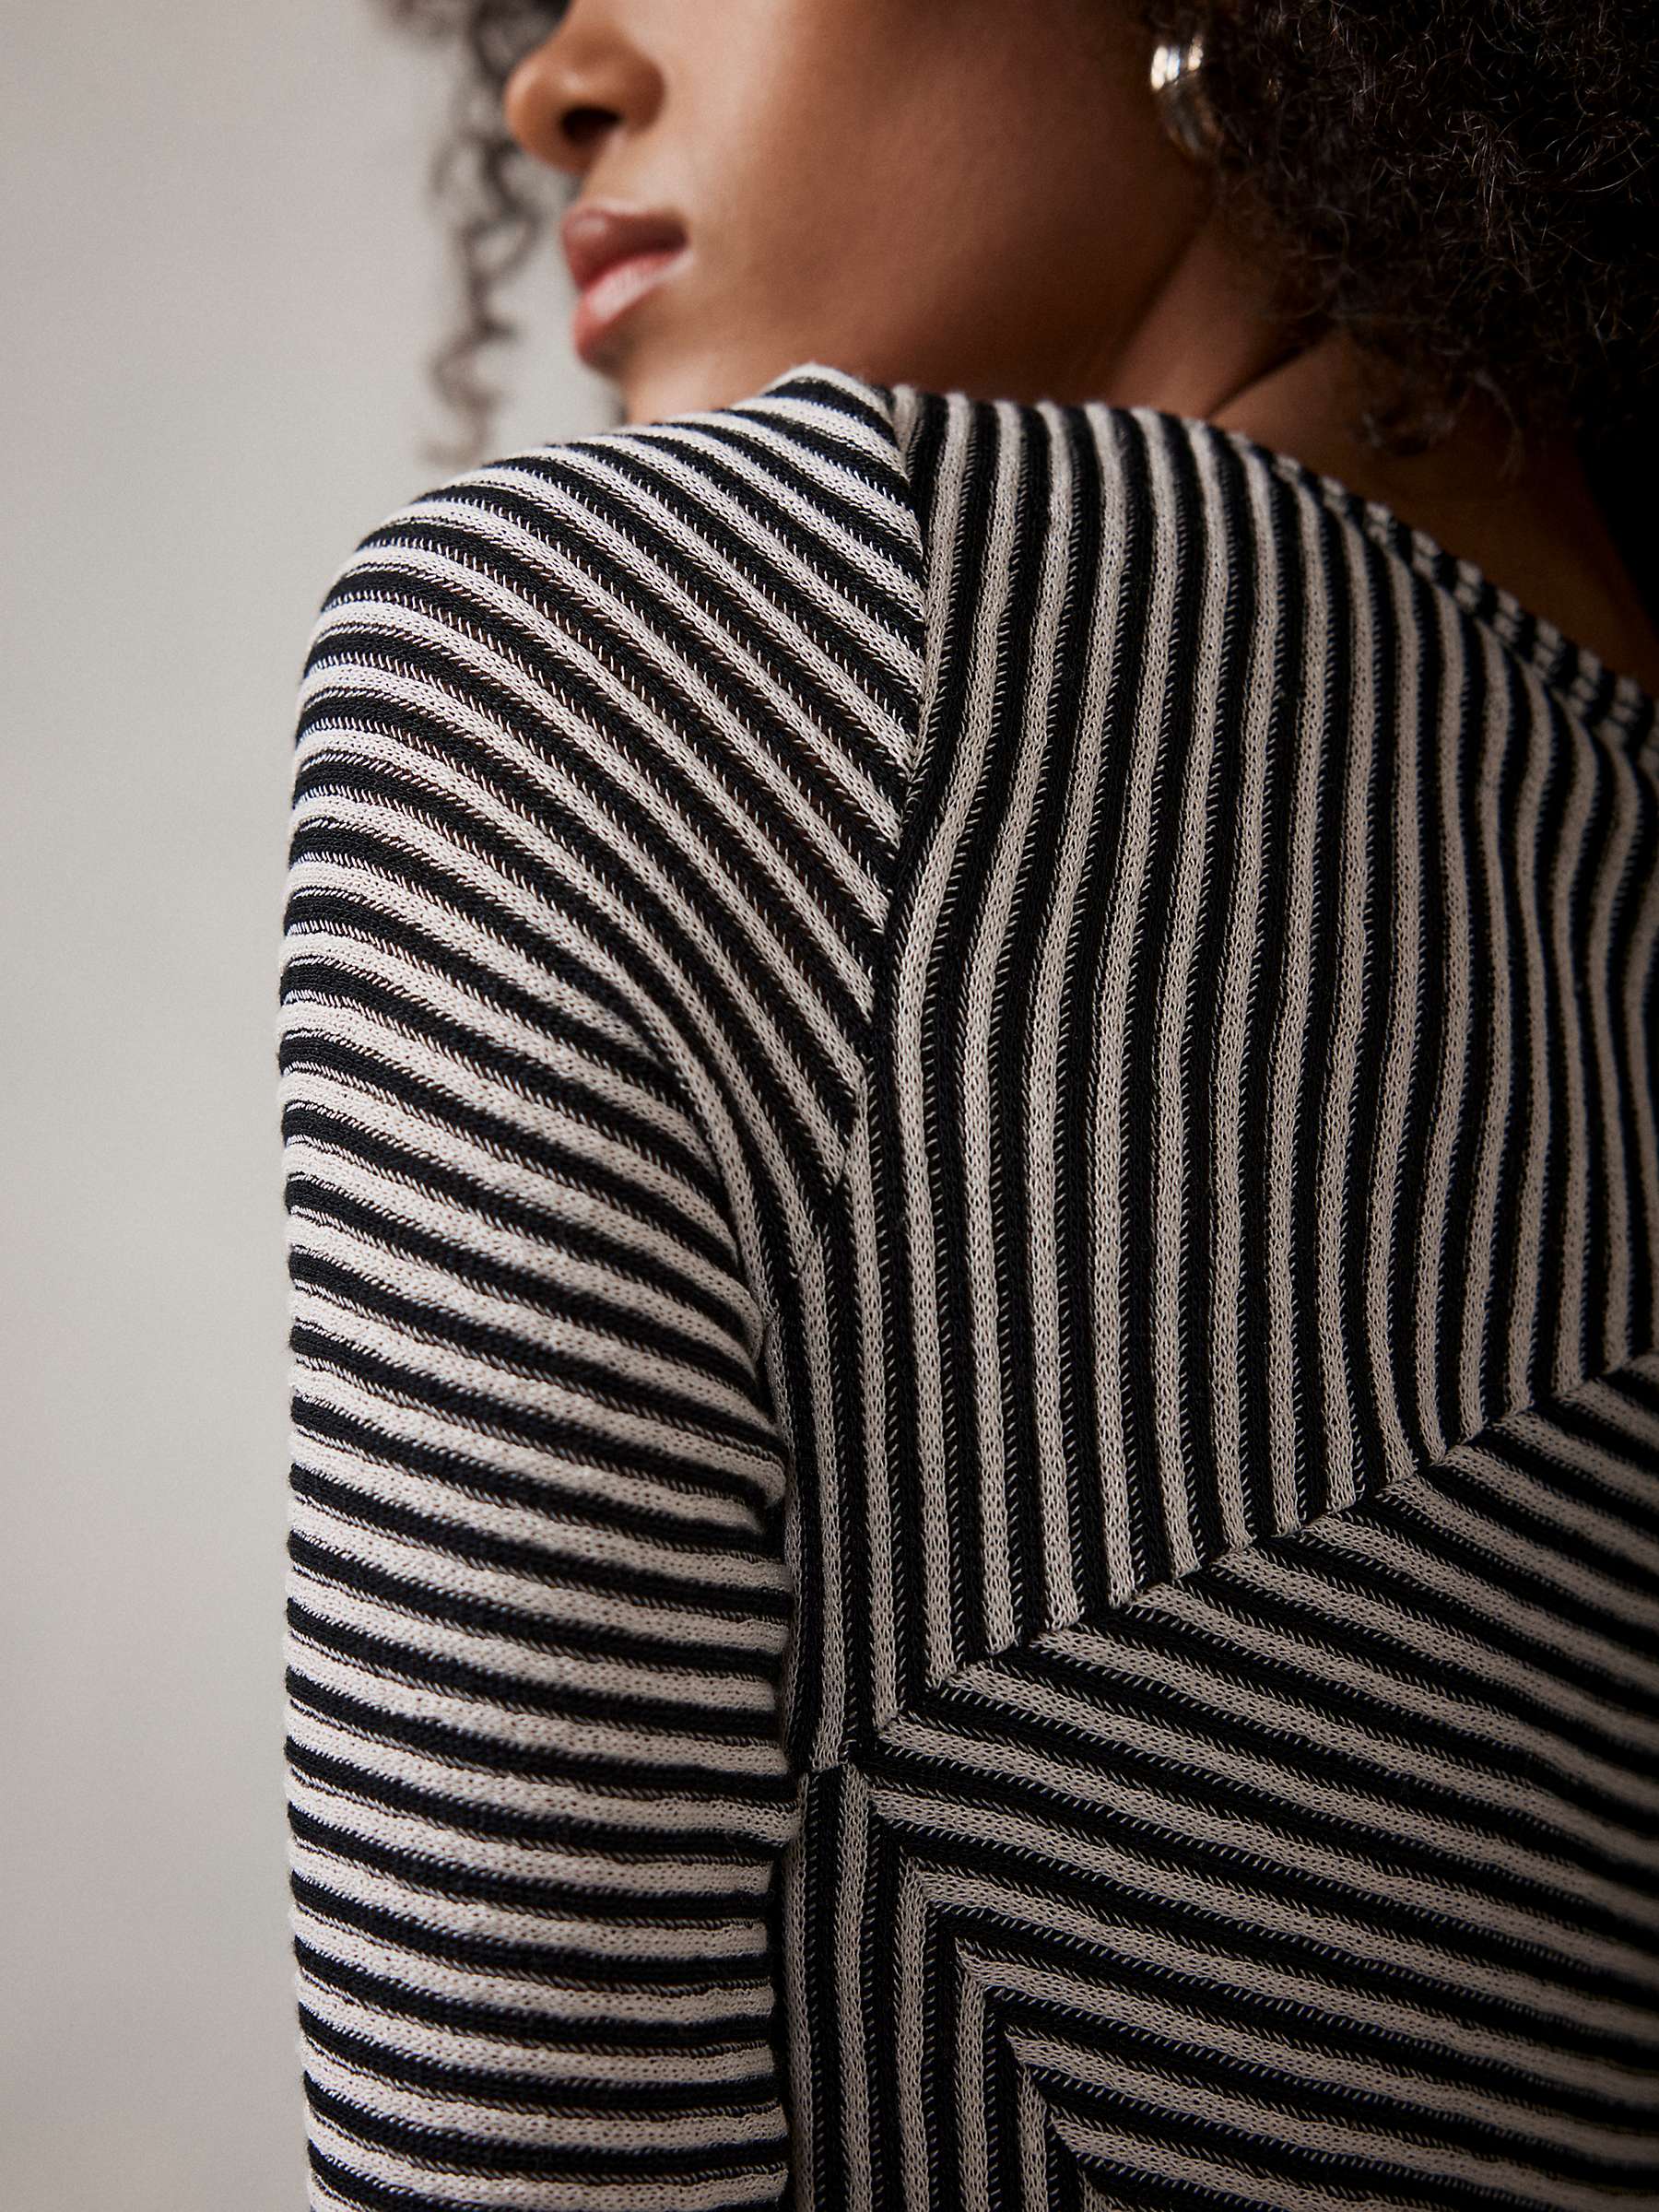 Buy Mint Velvet Black Striped Long Sleeve Top, Black/White Online at johnlewis.com